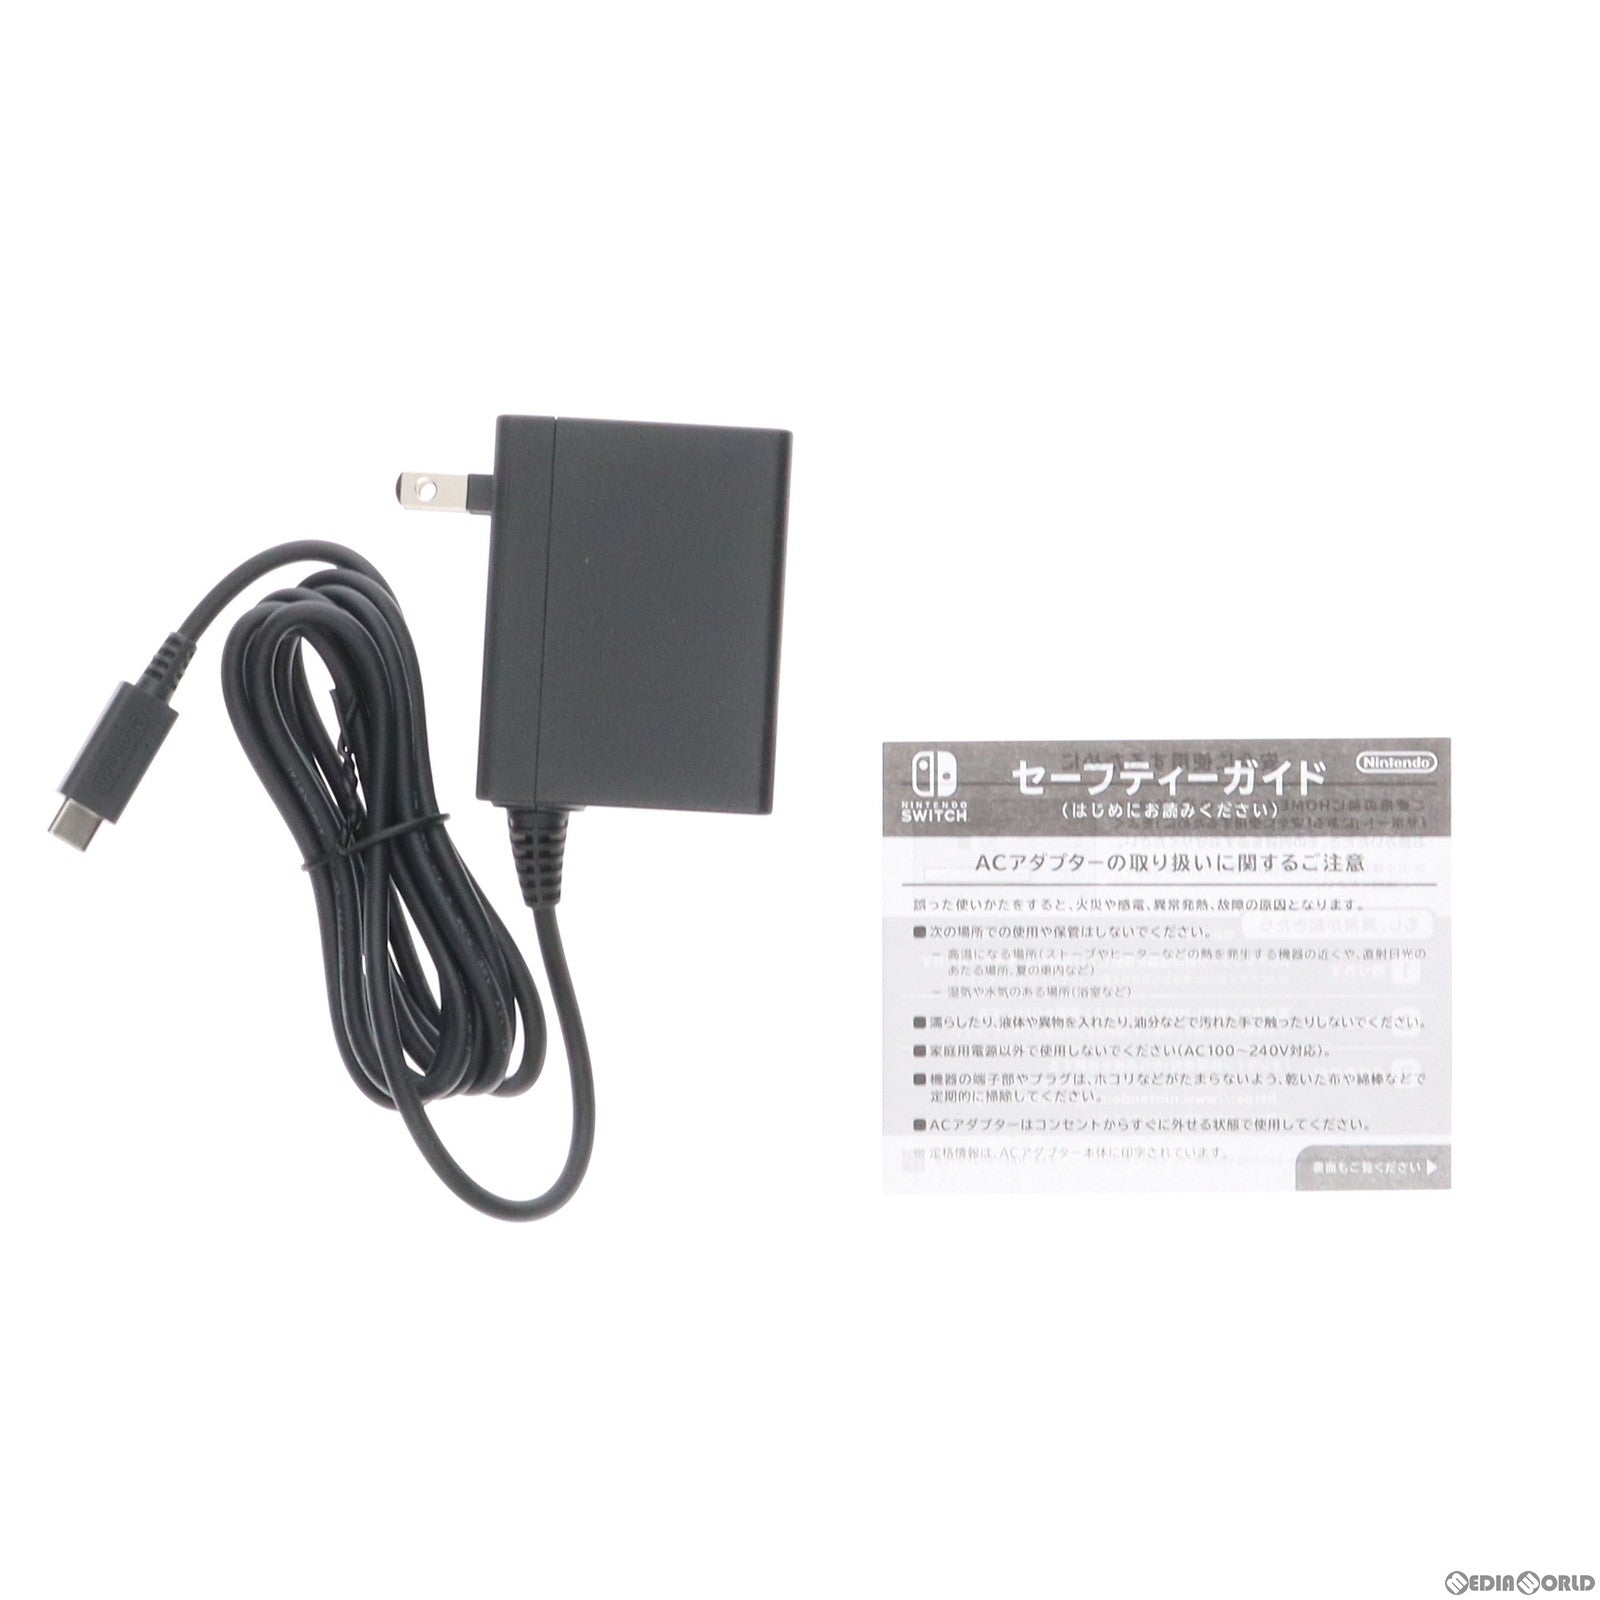 【中古即納】[本体][Switch](未使用)Nintendo Switch Lite(ニンテンドースイッチライト) ブルー(HDH-S-BBZAA)(20210521)